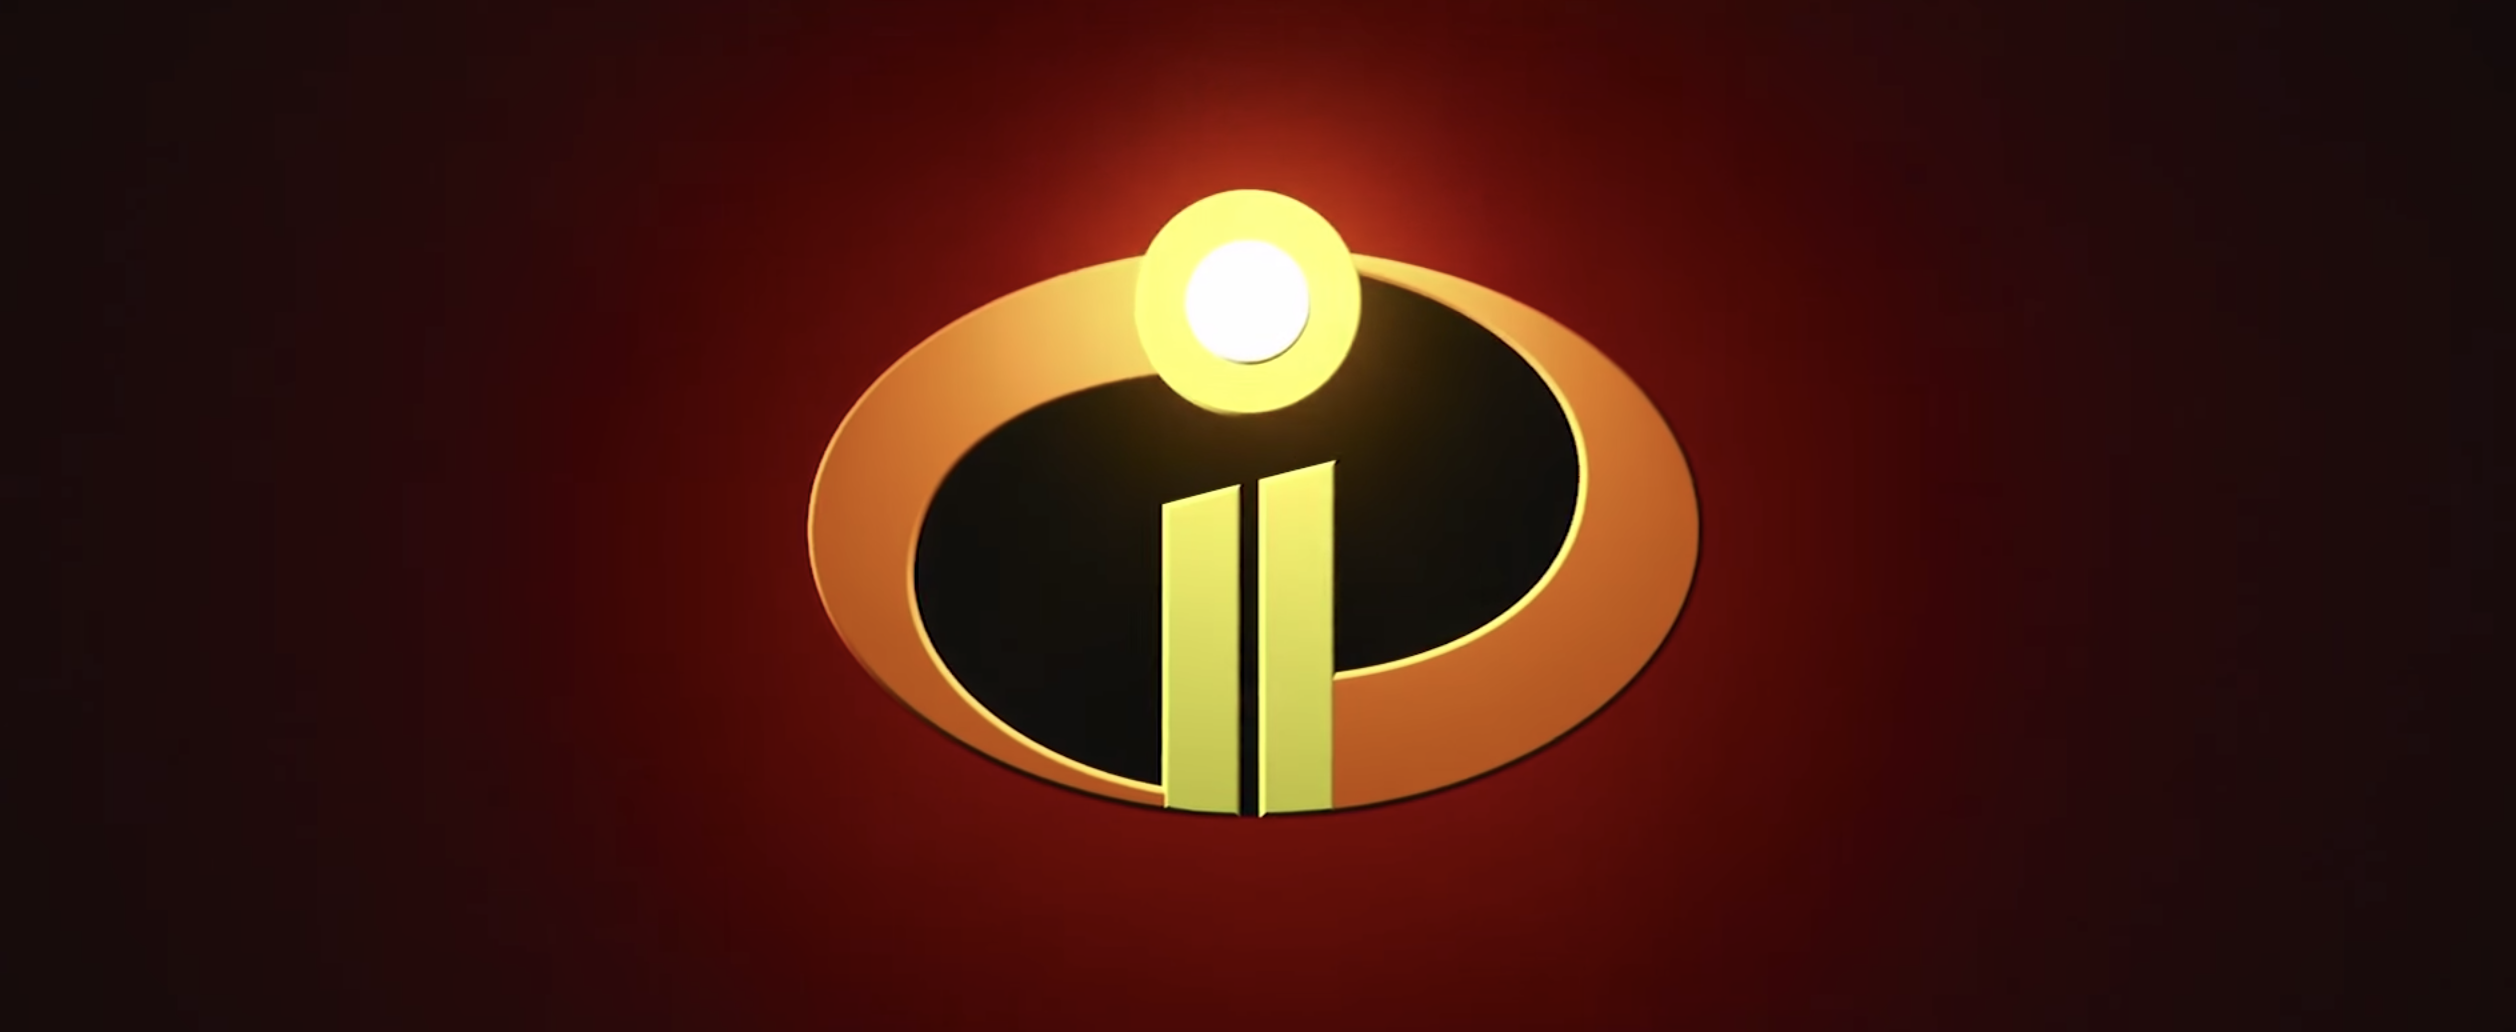 Primer Trailer Oficial De La Película Animada De Pixar “The Incredibles 2”